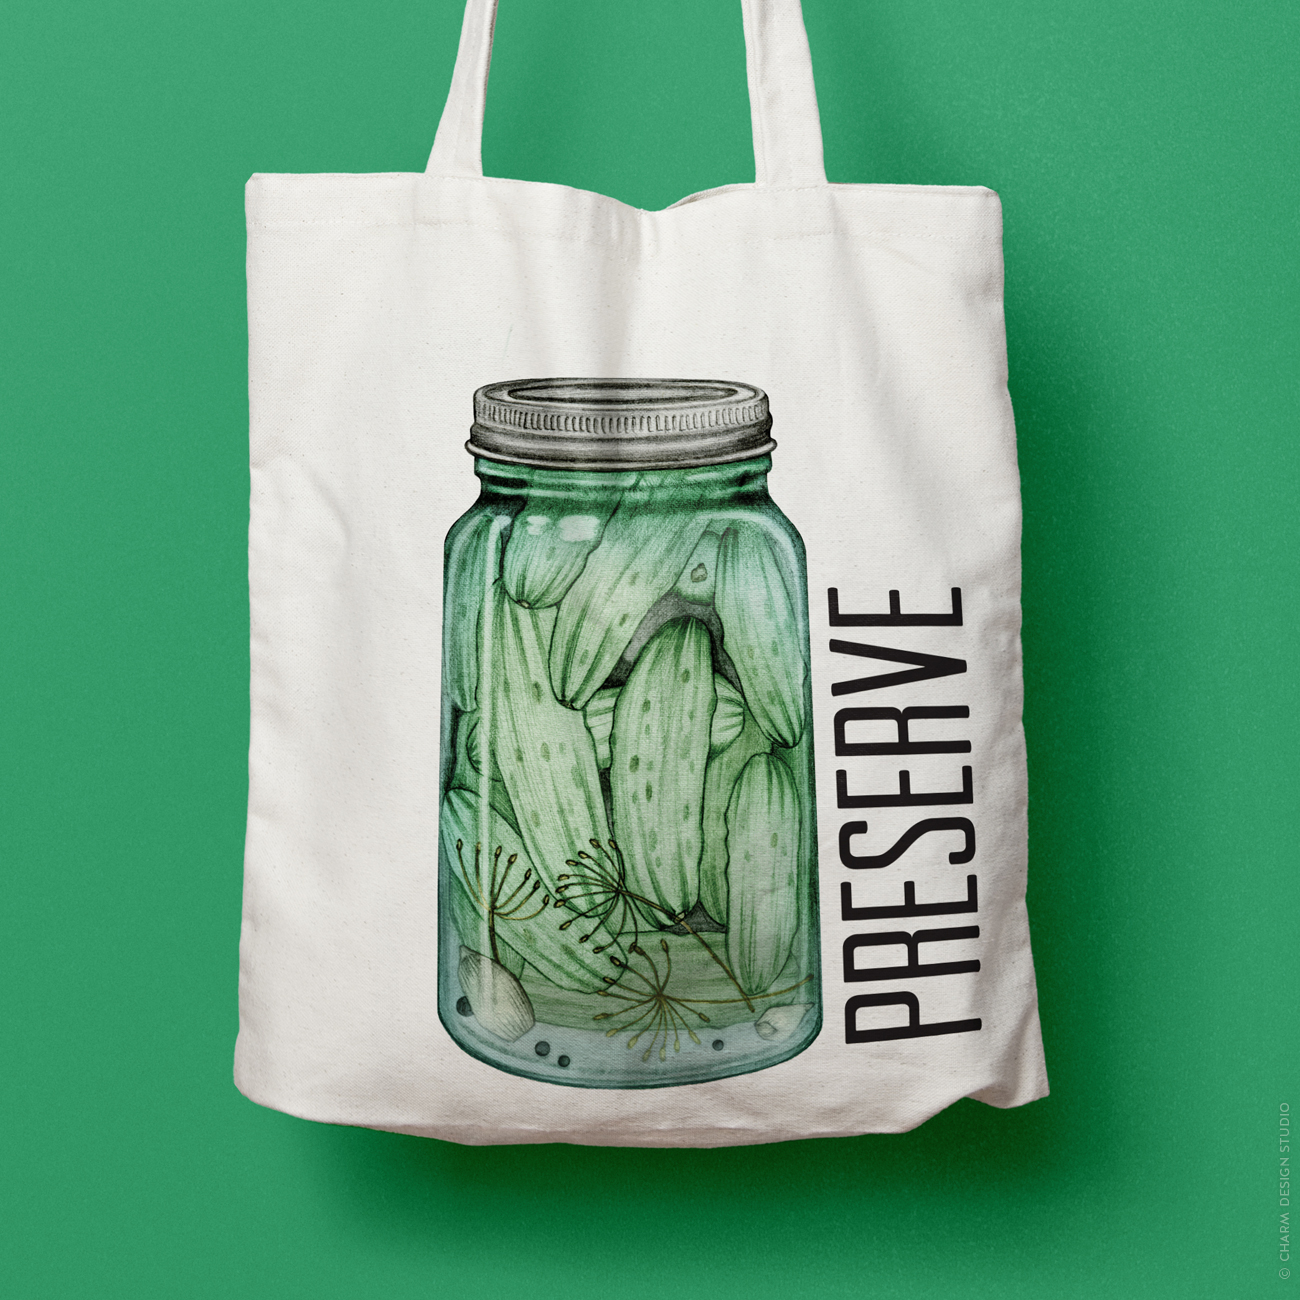 A Little Bit Crunchy pickle tote bag; © Charm Design Studio